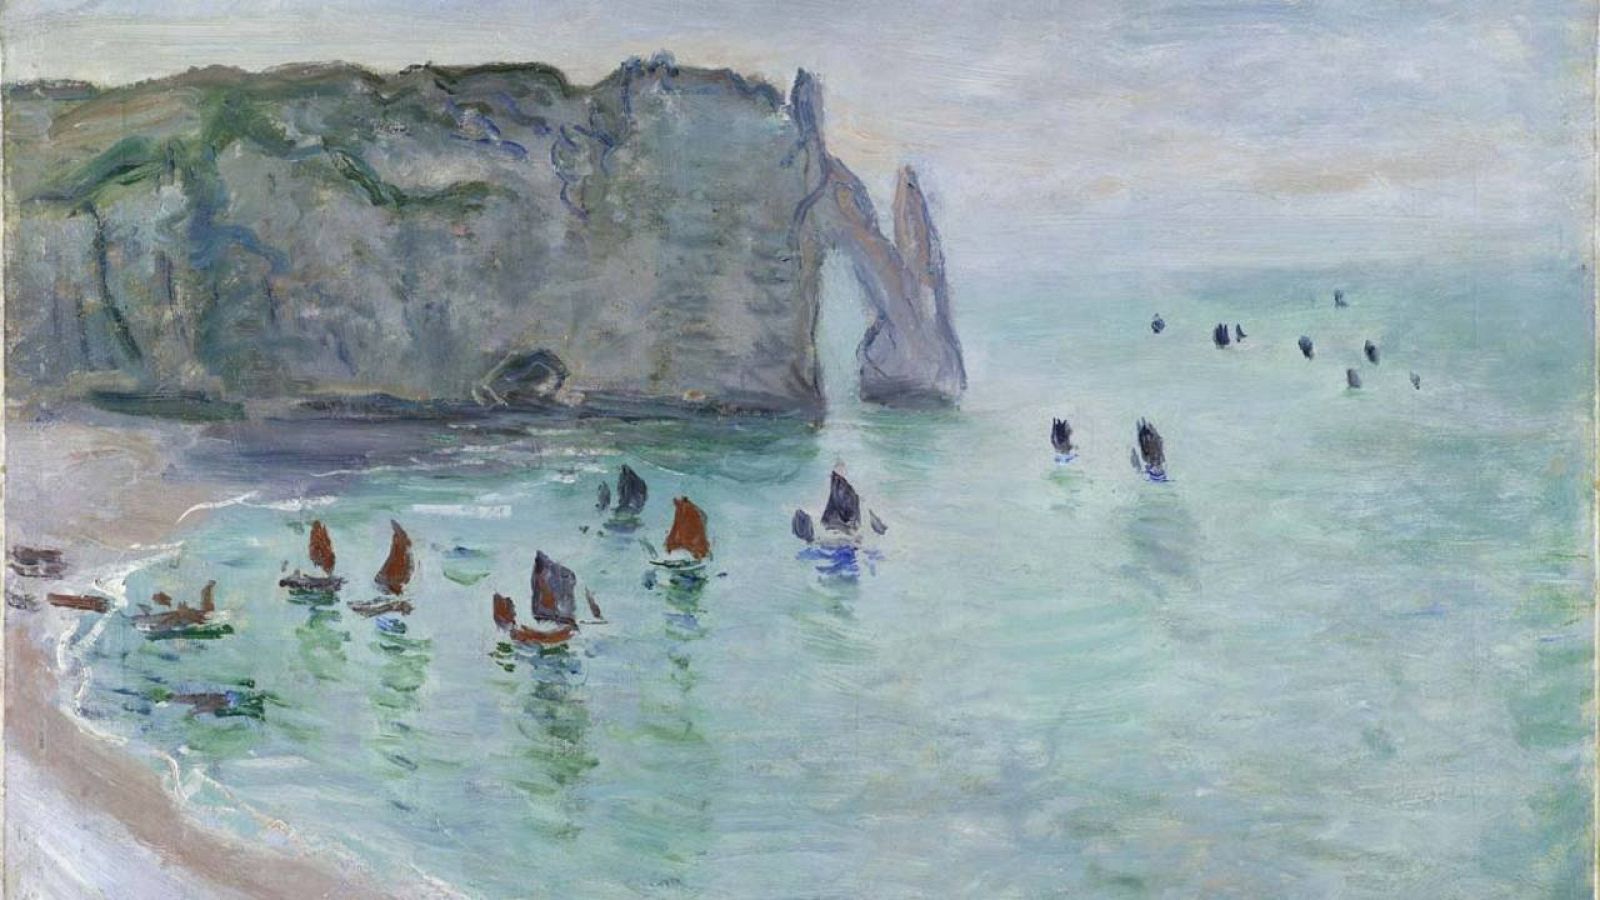 'Étretat. La porte d'Aval, bateaux de pêche sortant du port', (sobre 1885) Claude Monet. Musée des Beaux-Arts, Dijon.